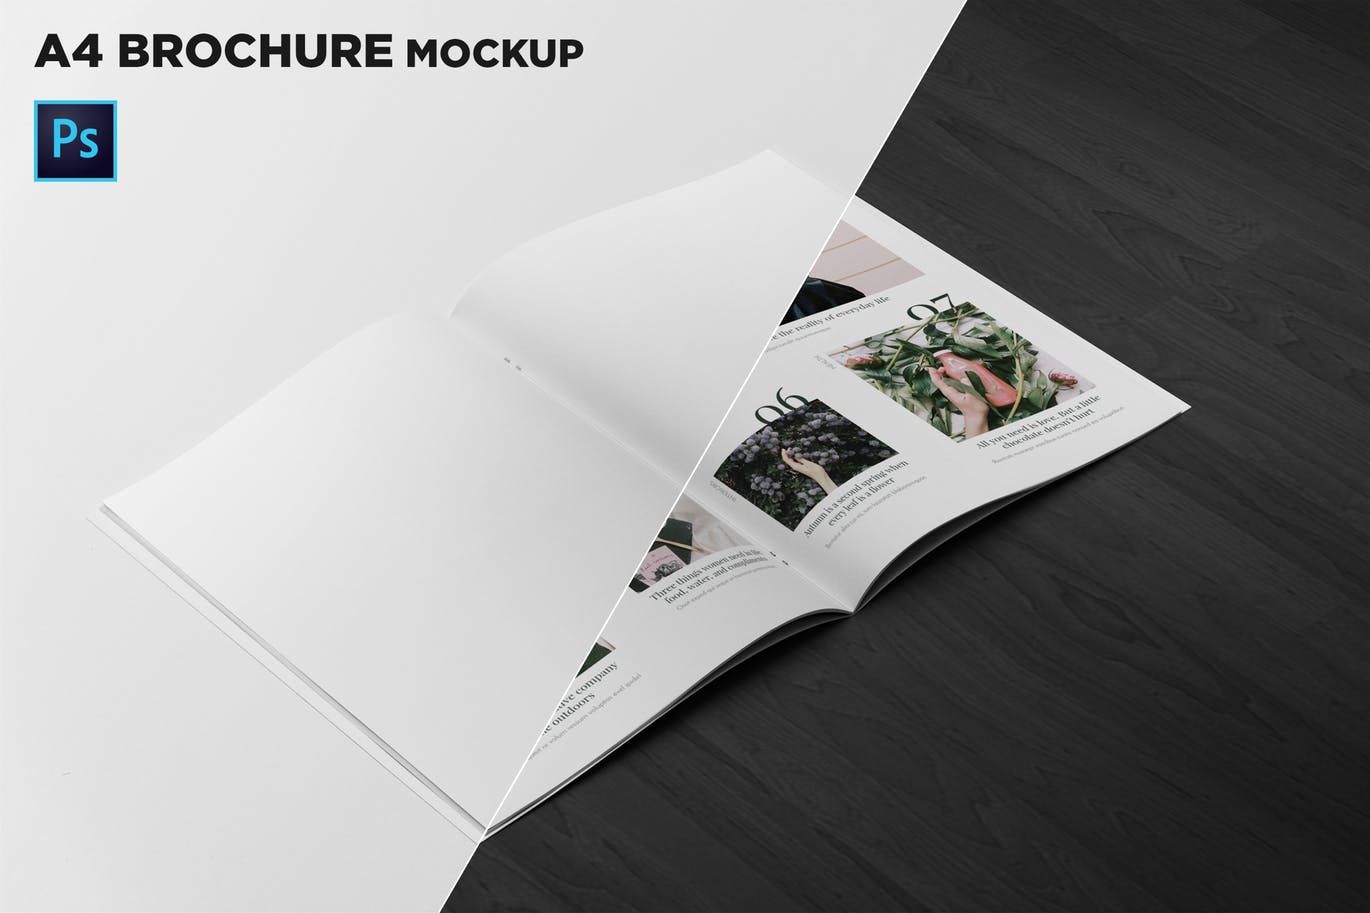 A4宣传小册子/企业画册内页版式设计45度角视图样机非凡图库精选 A4 Brochure Mockup 2 Pages Spread插图